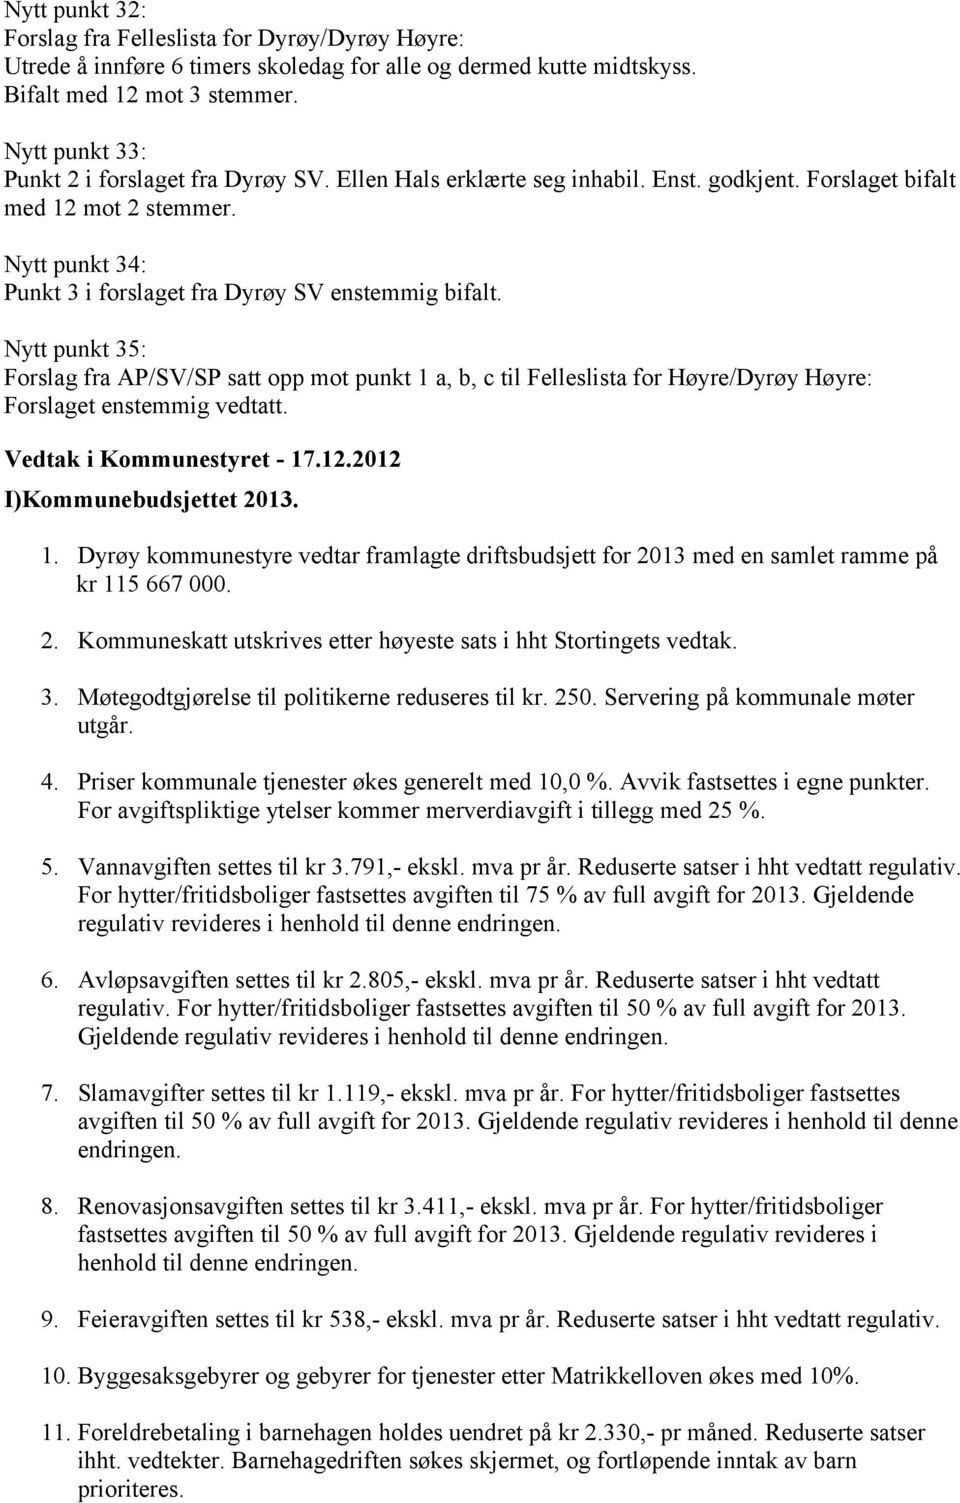 Nytt punkt 34: Punkt 3 i forslaget fra Dyrøy SV enstemmig bifalt. Nytt punkt 35: Forslag fra AP/SV/SP satt opp mot punkt 1 a, b, c til Felleslista for Høyre/Dyrøy Høyre: Forslaget enstemmig vedtatt.